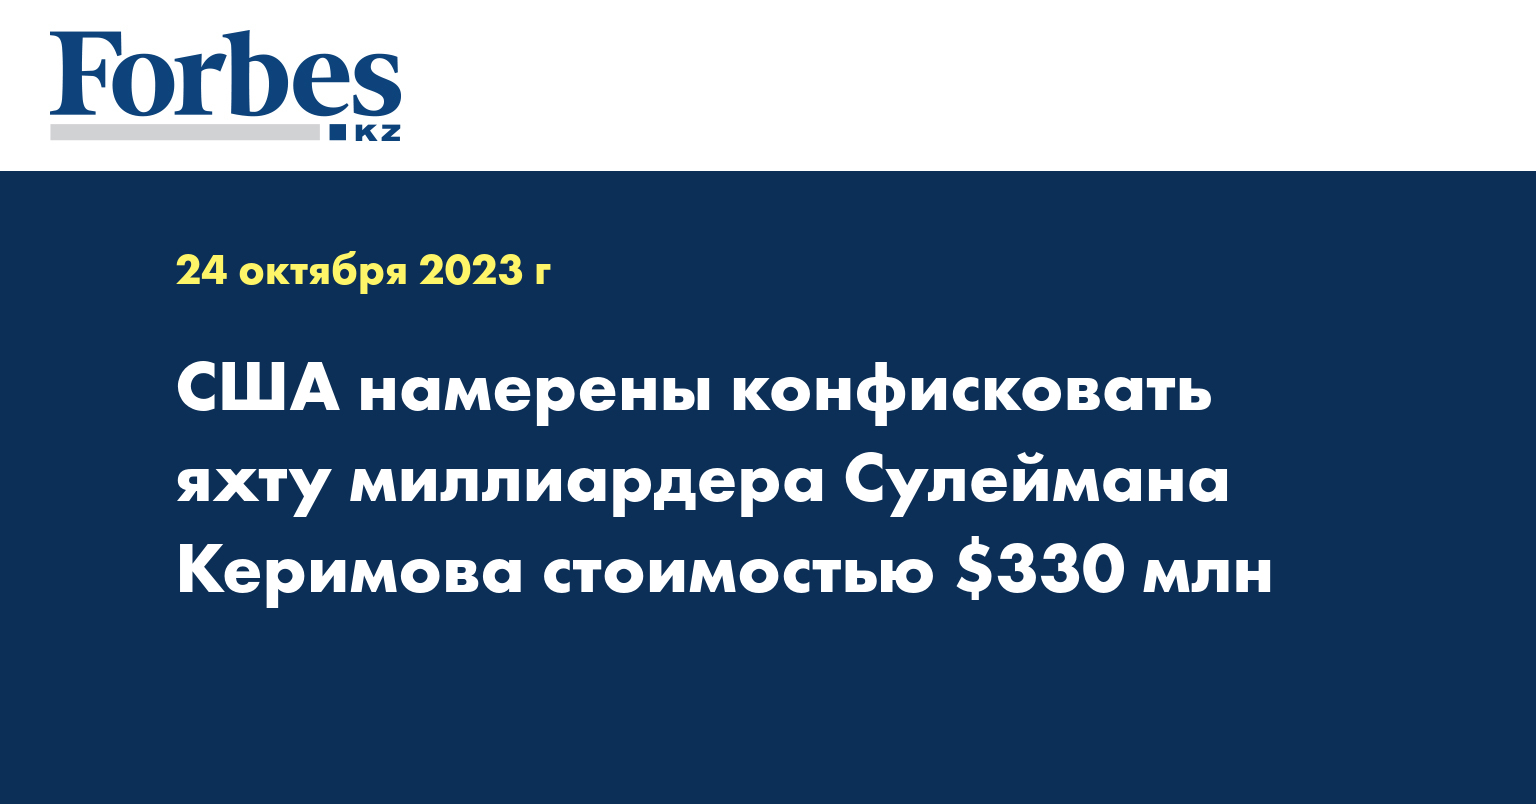 США намерены конфисковать яхту миллиардера Сулеймана Керимова стоимостью $330 млн